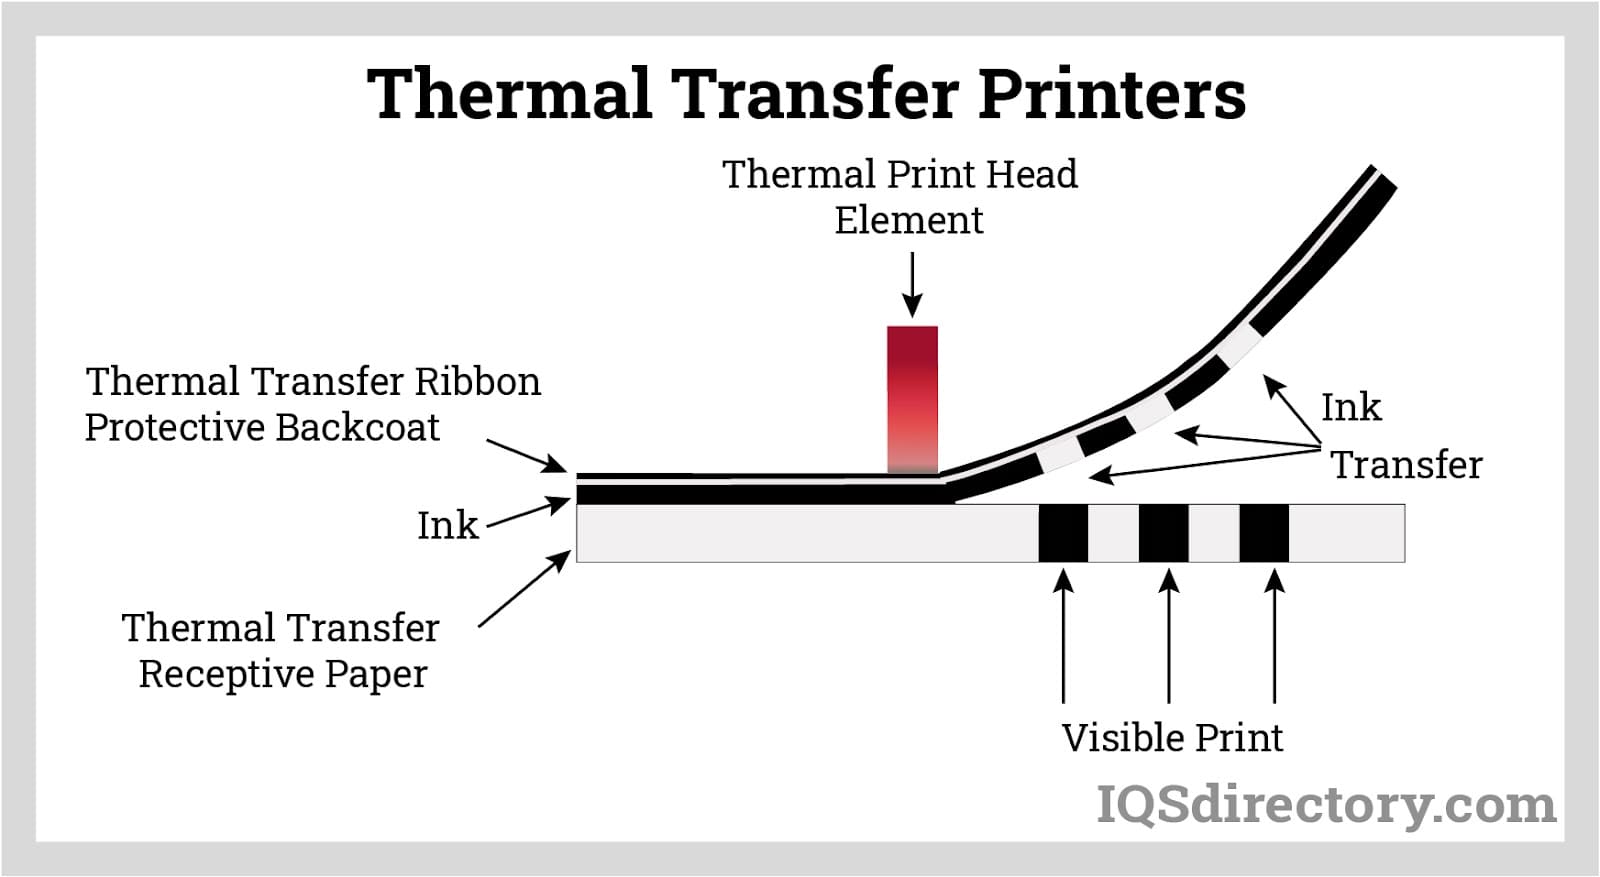 Thermal Transfer Printers